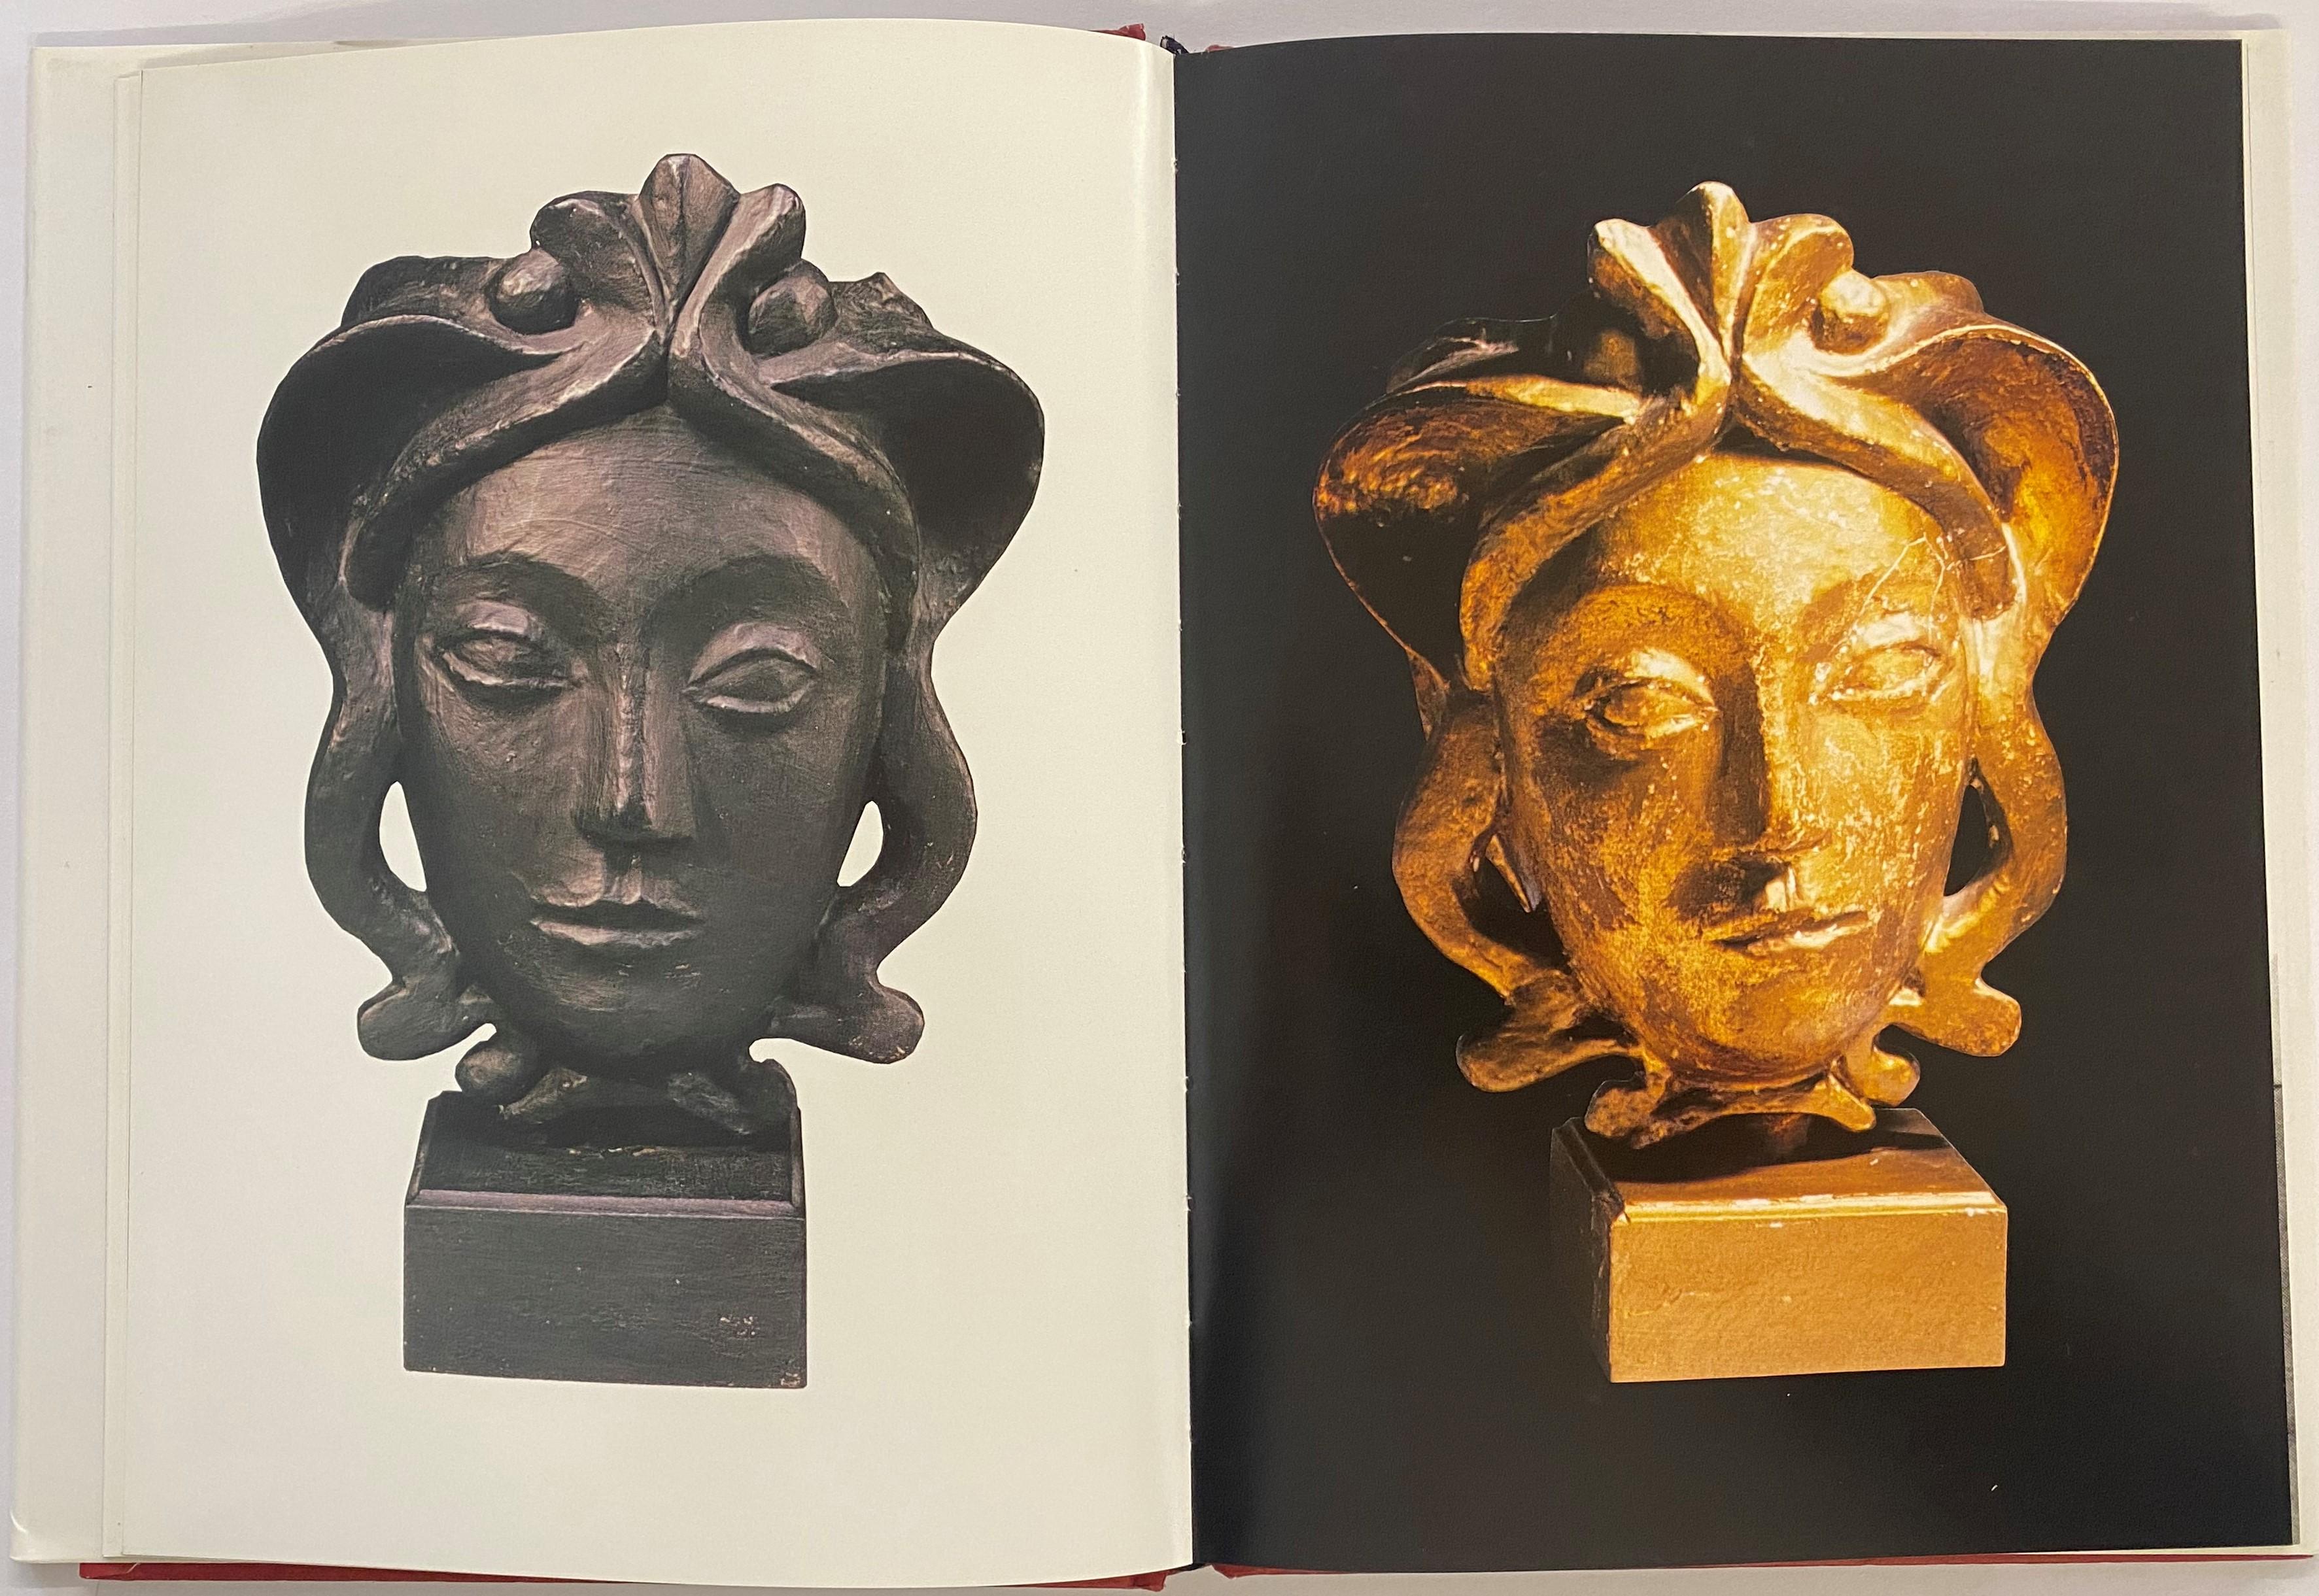 Ce livre fait partie de la collection Mémoires du design des éditions Assouline. Jean-Michel Frank, né en 1895, était un véritable génie des arts décoratifs du XXe siècle, dessinant des meubles et des intérieurs. En outre, il a souvent collaboré